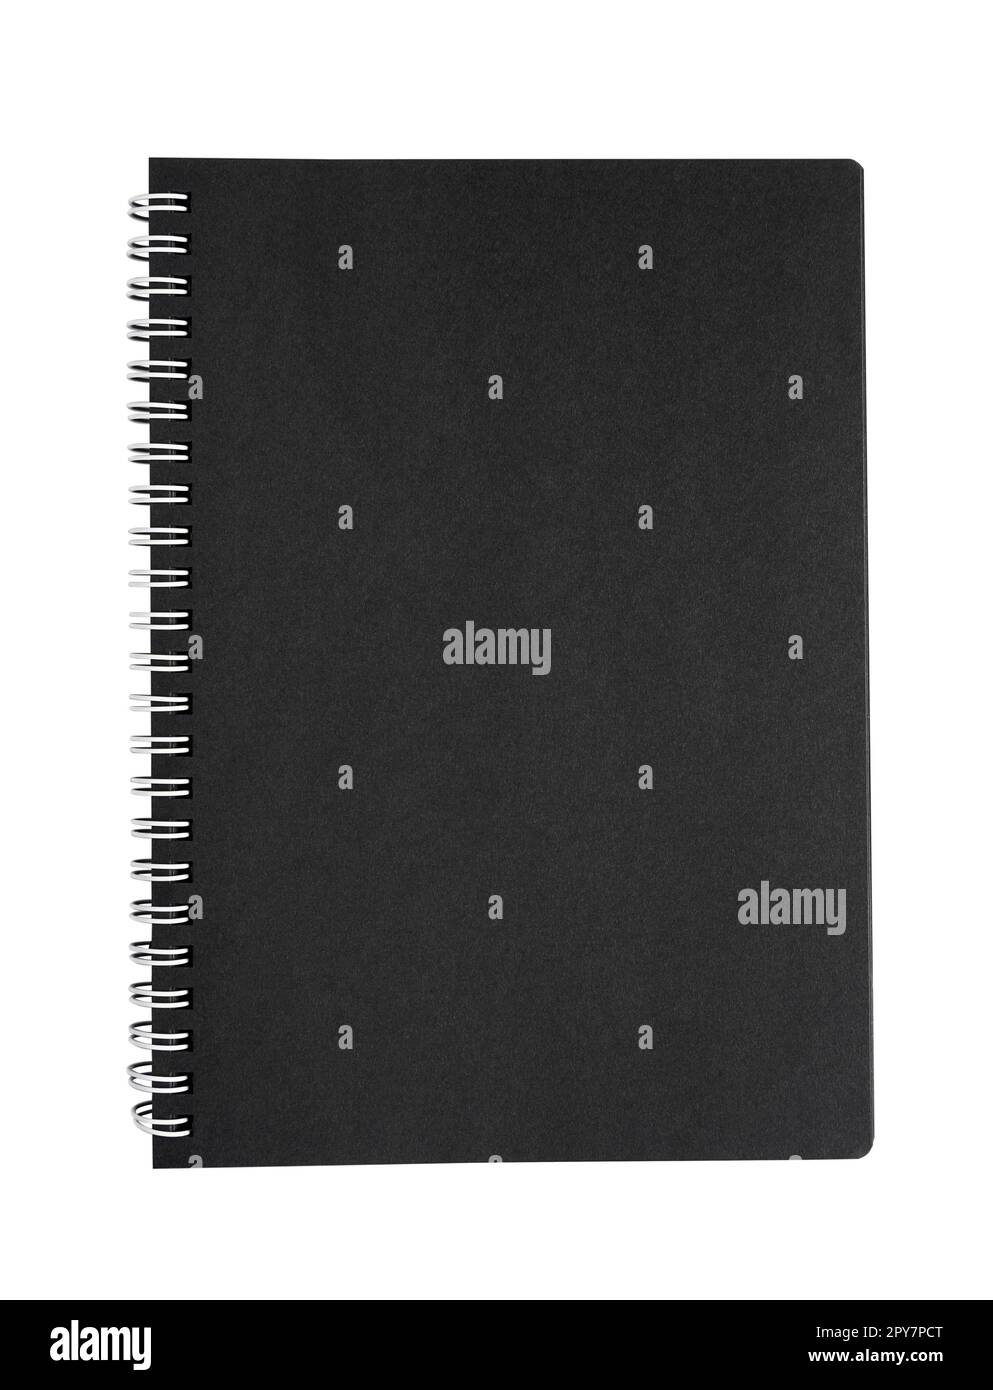 coperchio chiuso del notebook con spirale metallica e pagine bianche nere isolate su bianco Foto Stock